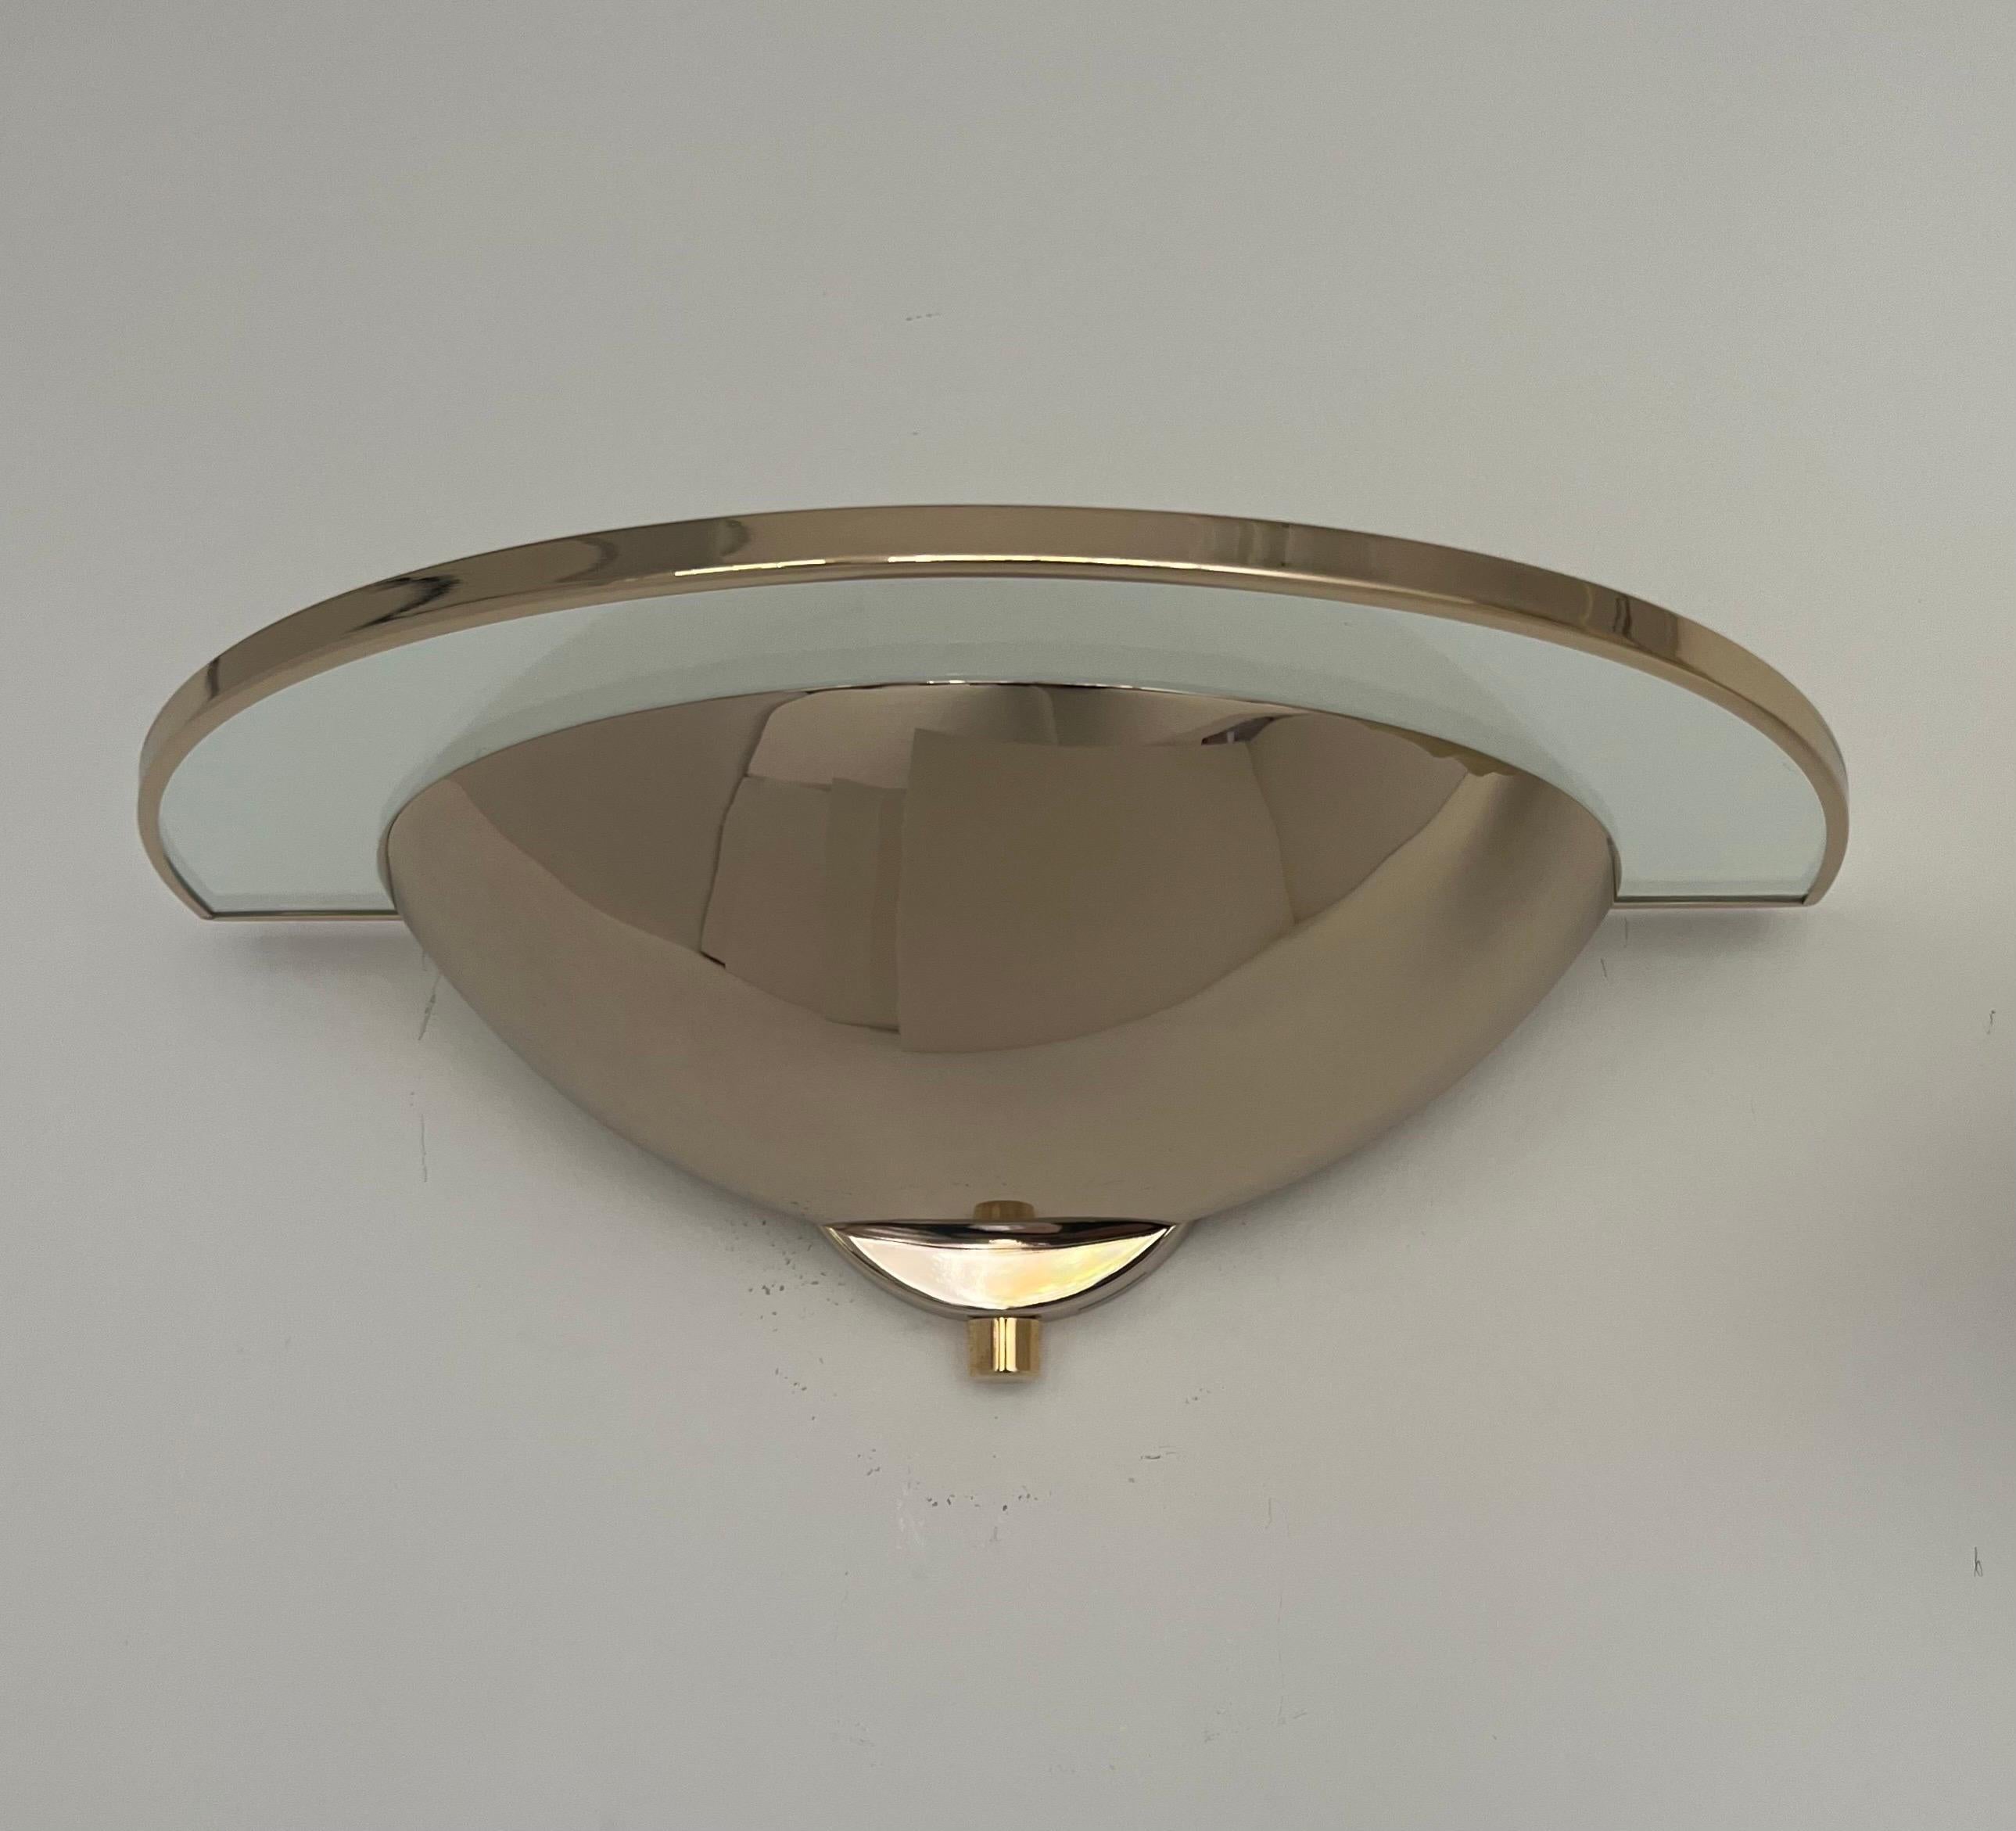 Wunderschöne postmoderne dimmbare Wandleuchten aus Goldmetall und Glas von Leonardo Marelli für Estiluz. Modell: A-1094 Vergoldet.
Diese Lampen wurden in den 1980er Jahren von Estiluz in Barcelona (Spanien) entworfen und hergestellt. Der Zustand ist